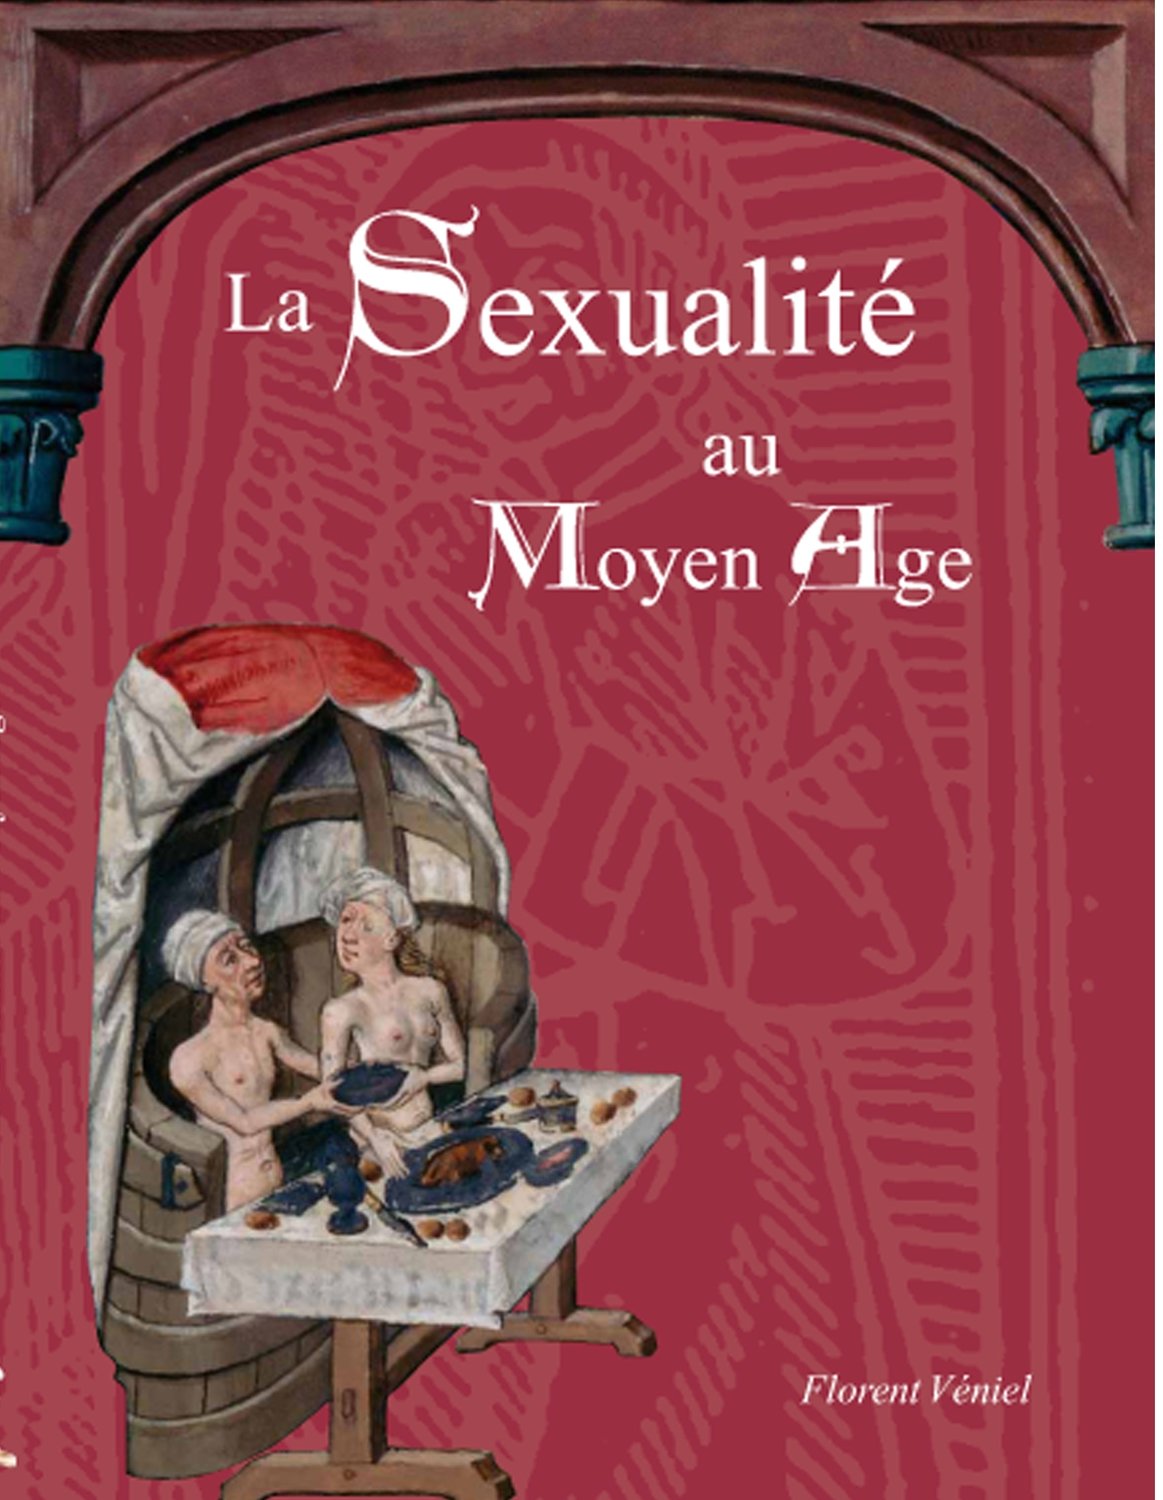 La Sexualité au Moyen Âge